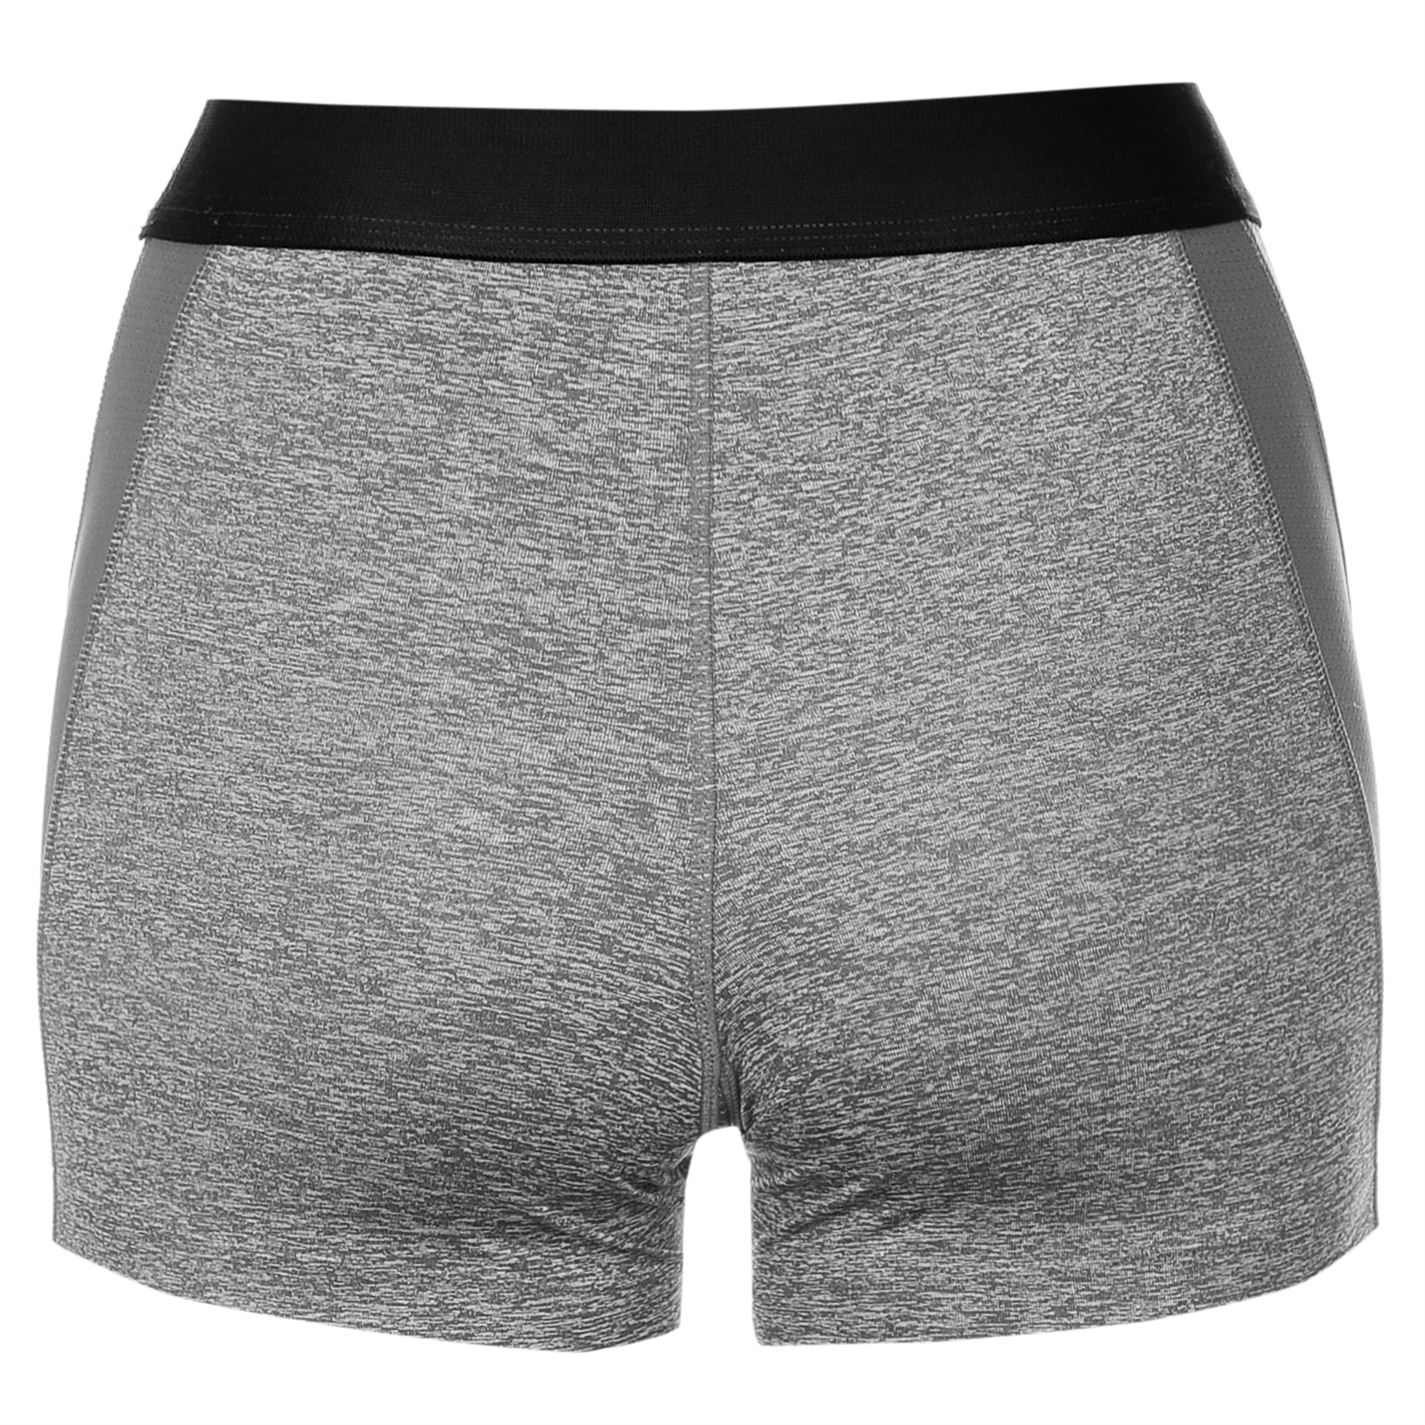 Reebok Womens Missy Sports Short Briefs Underwear Mesh Stretch Moisture ...